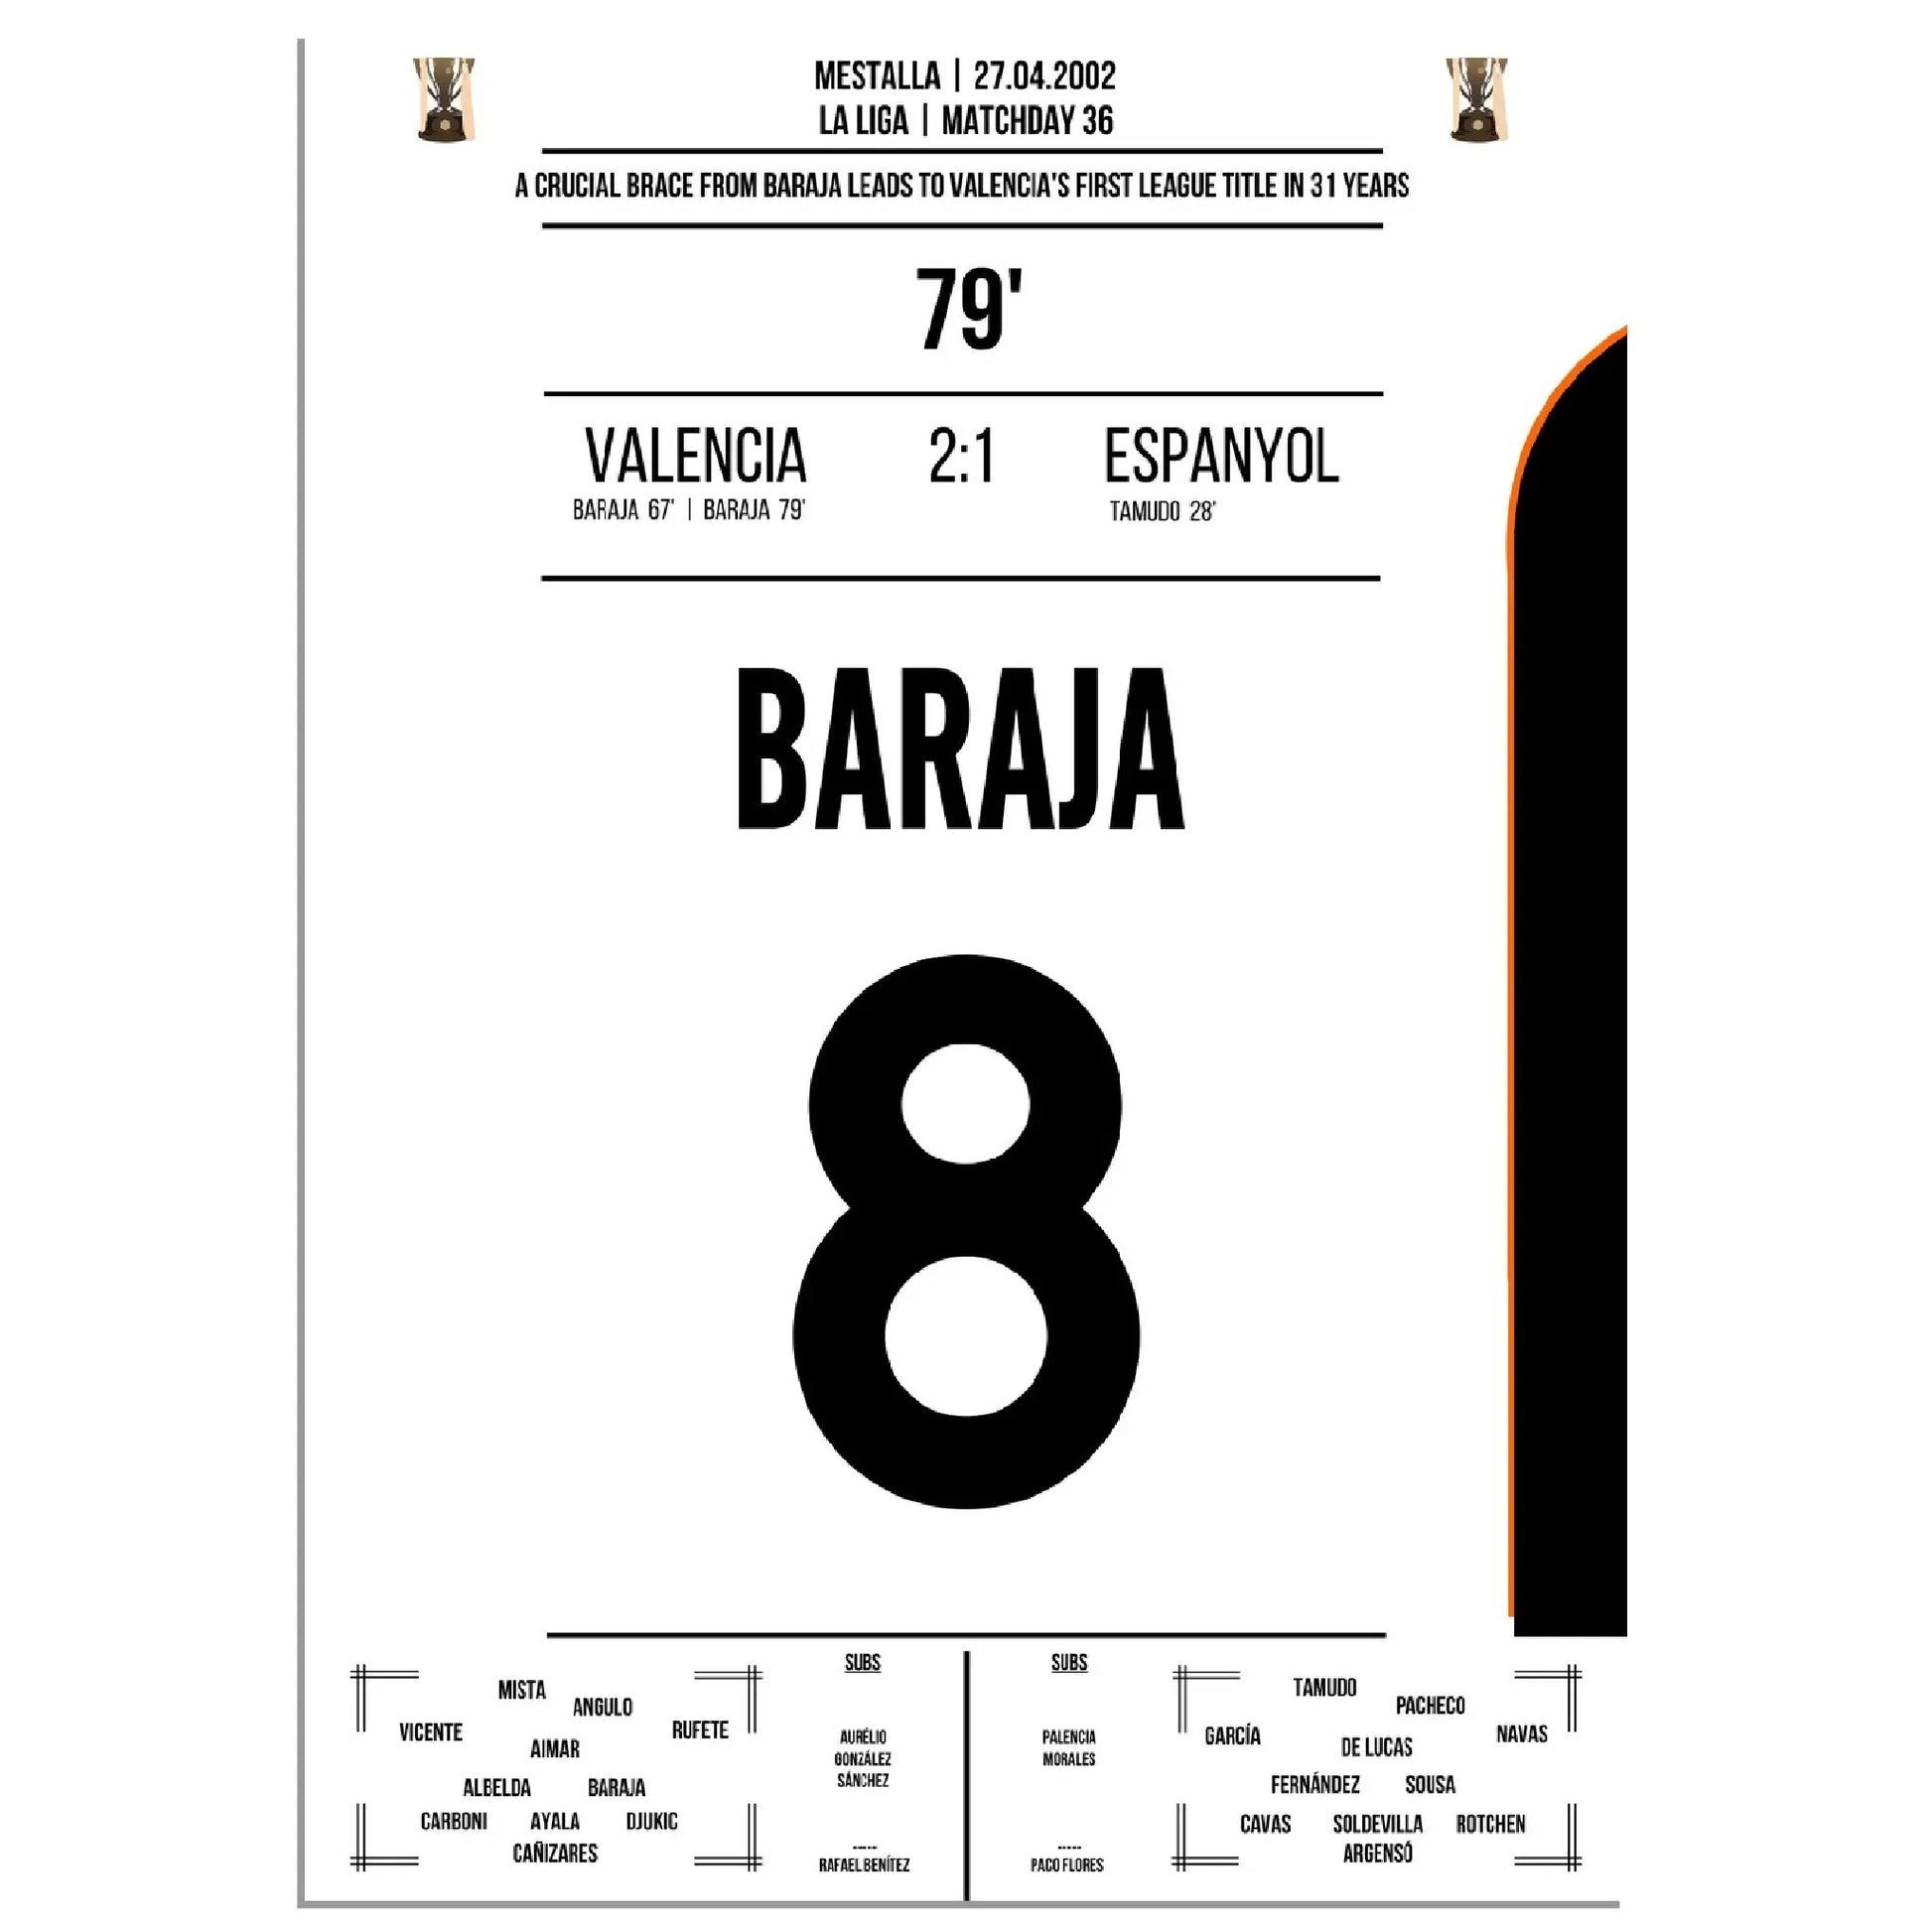 Baraja dreht das Spiel gegen Espanyol auf dem Weg zu Valencia's erster Meisterschaft nach 31 Jahren 